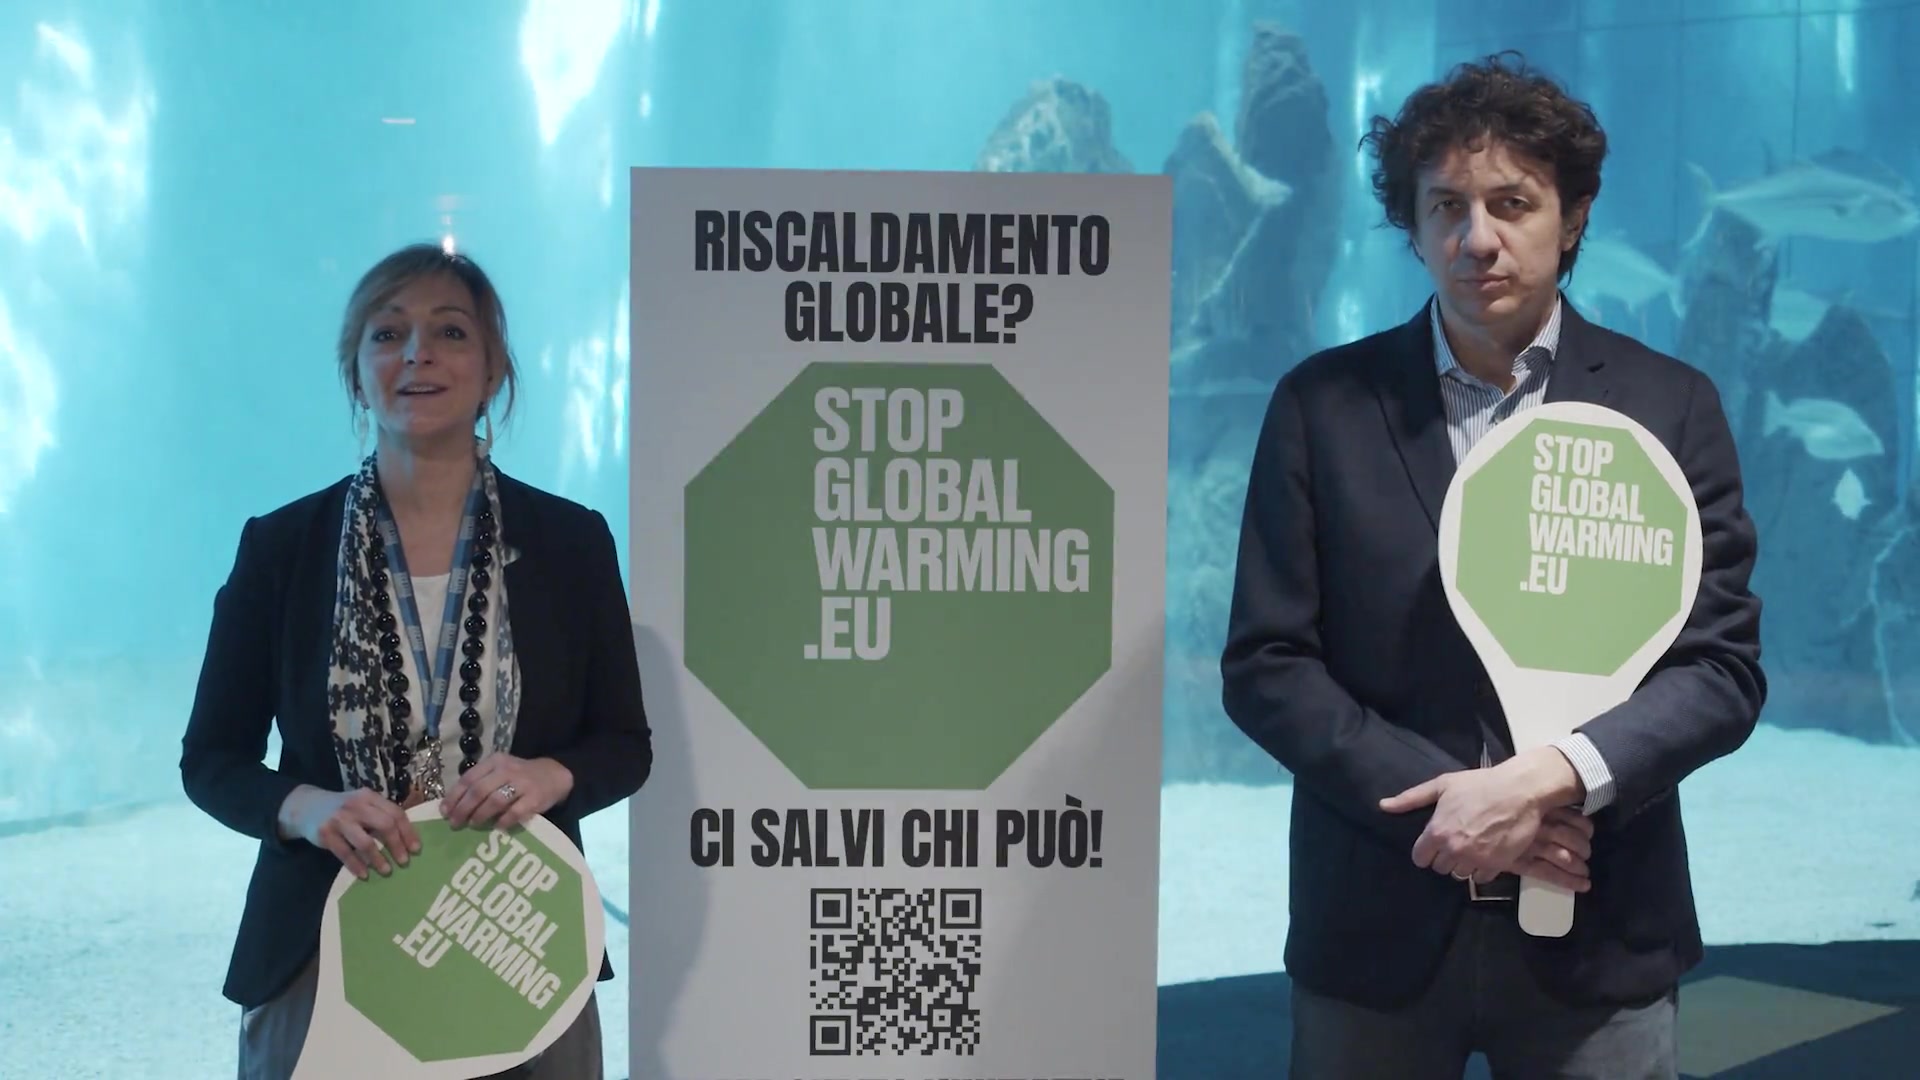 Anche l'acquario di Genova contro il riscaldamento globale